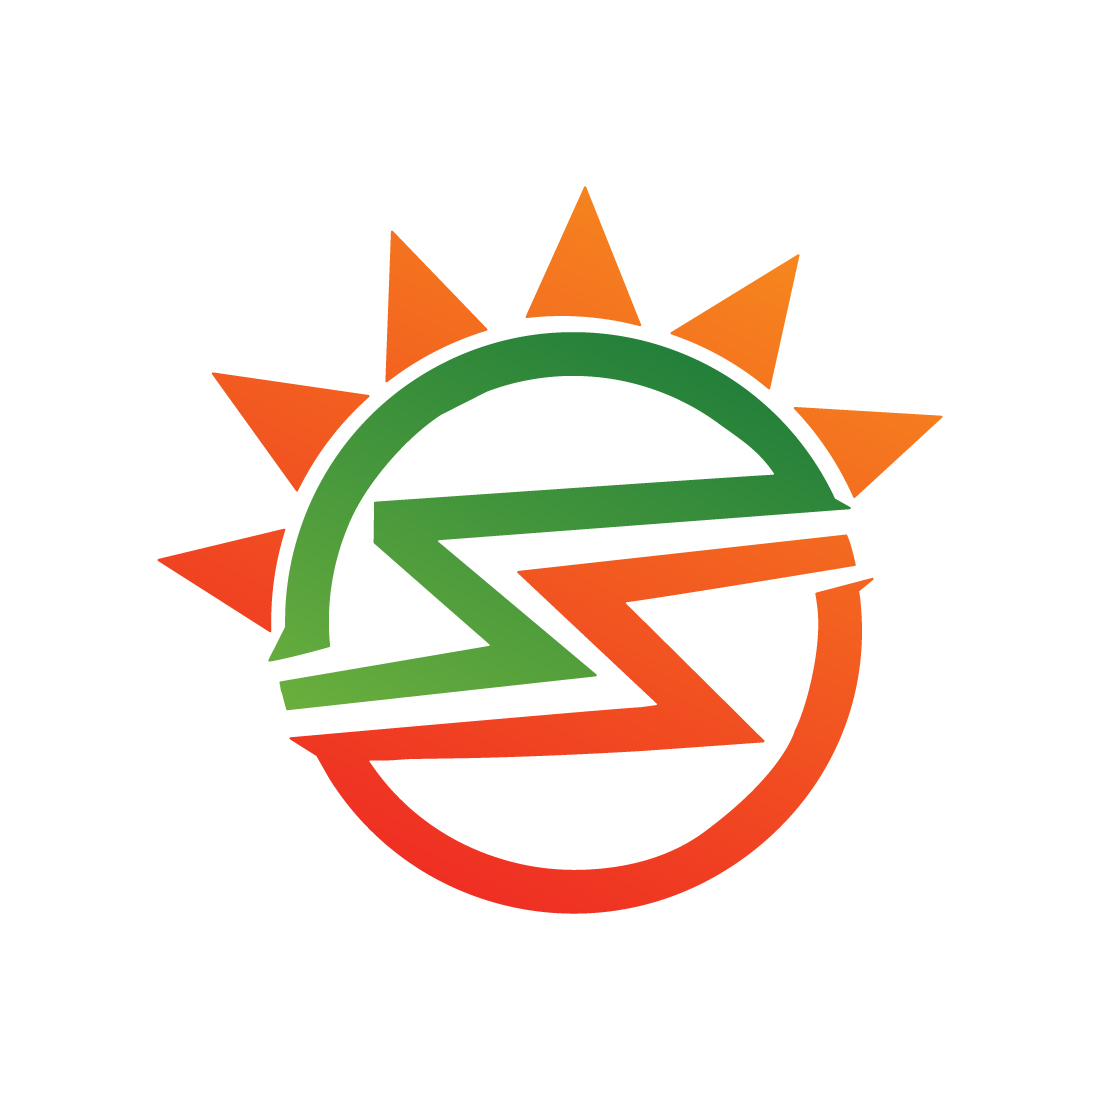 Solar energy logo design vector images Solar Panel logo design Sun Energy Electronic logo template icon preview image.